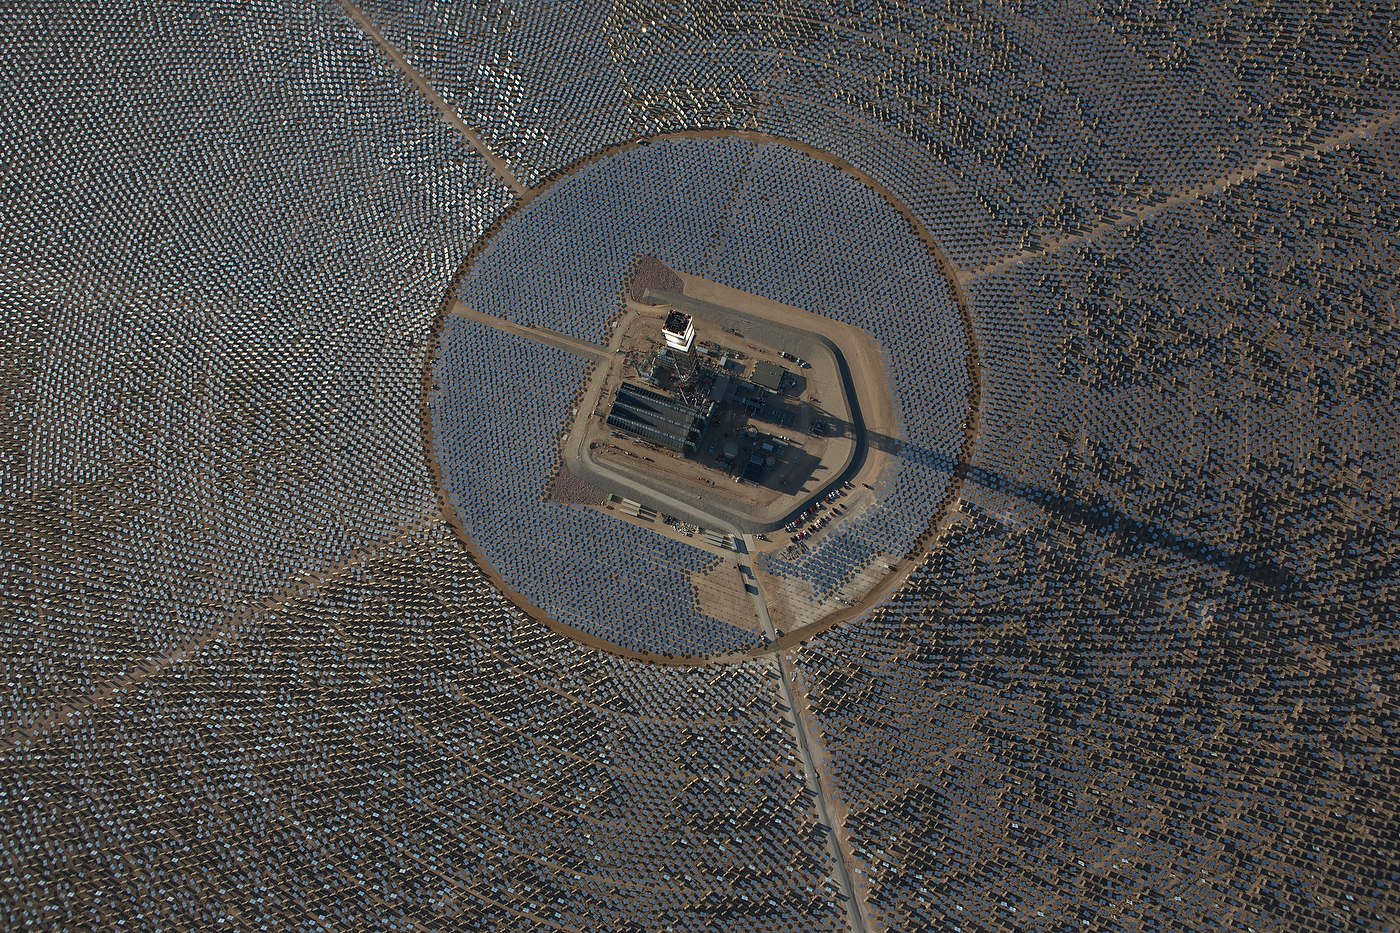 Ivanpah Solar Plant, California.